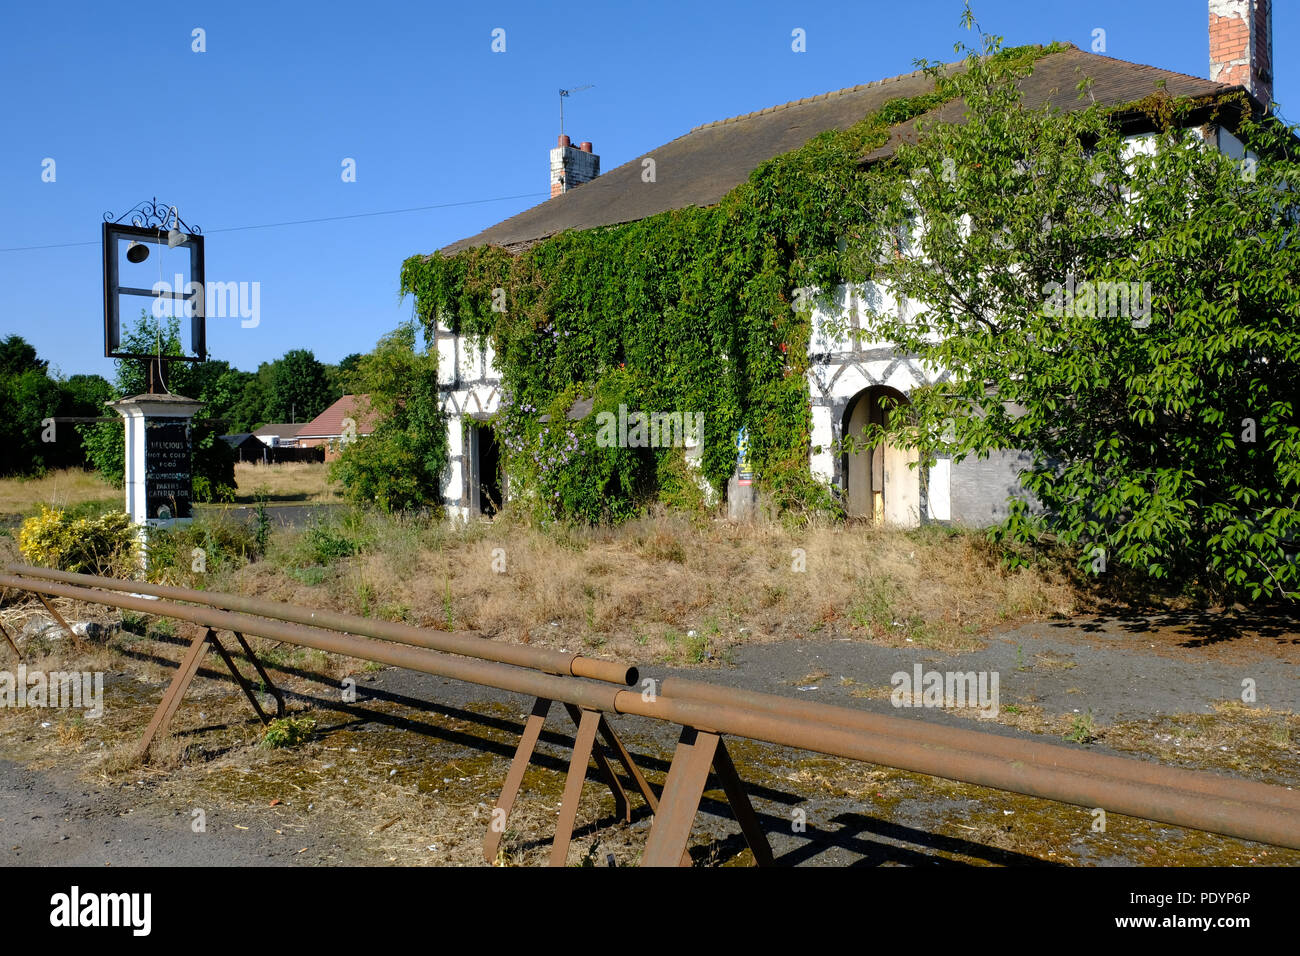 Abandoned roadside public house near Whitchurch, Shropshire, UK Stock Photo